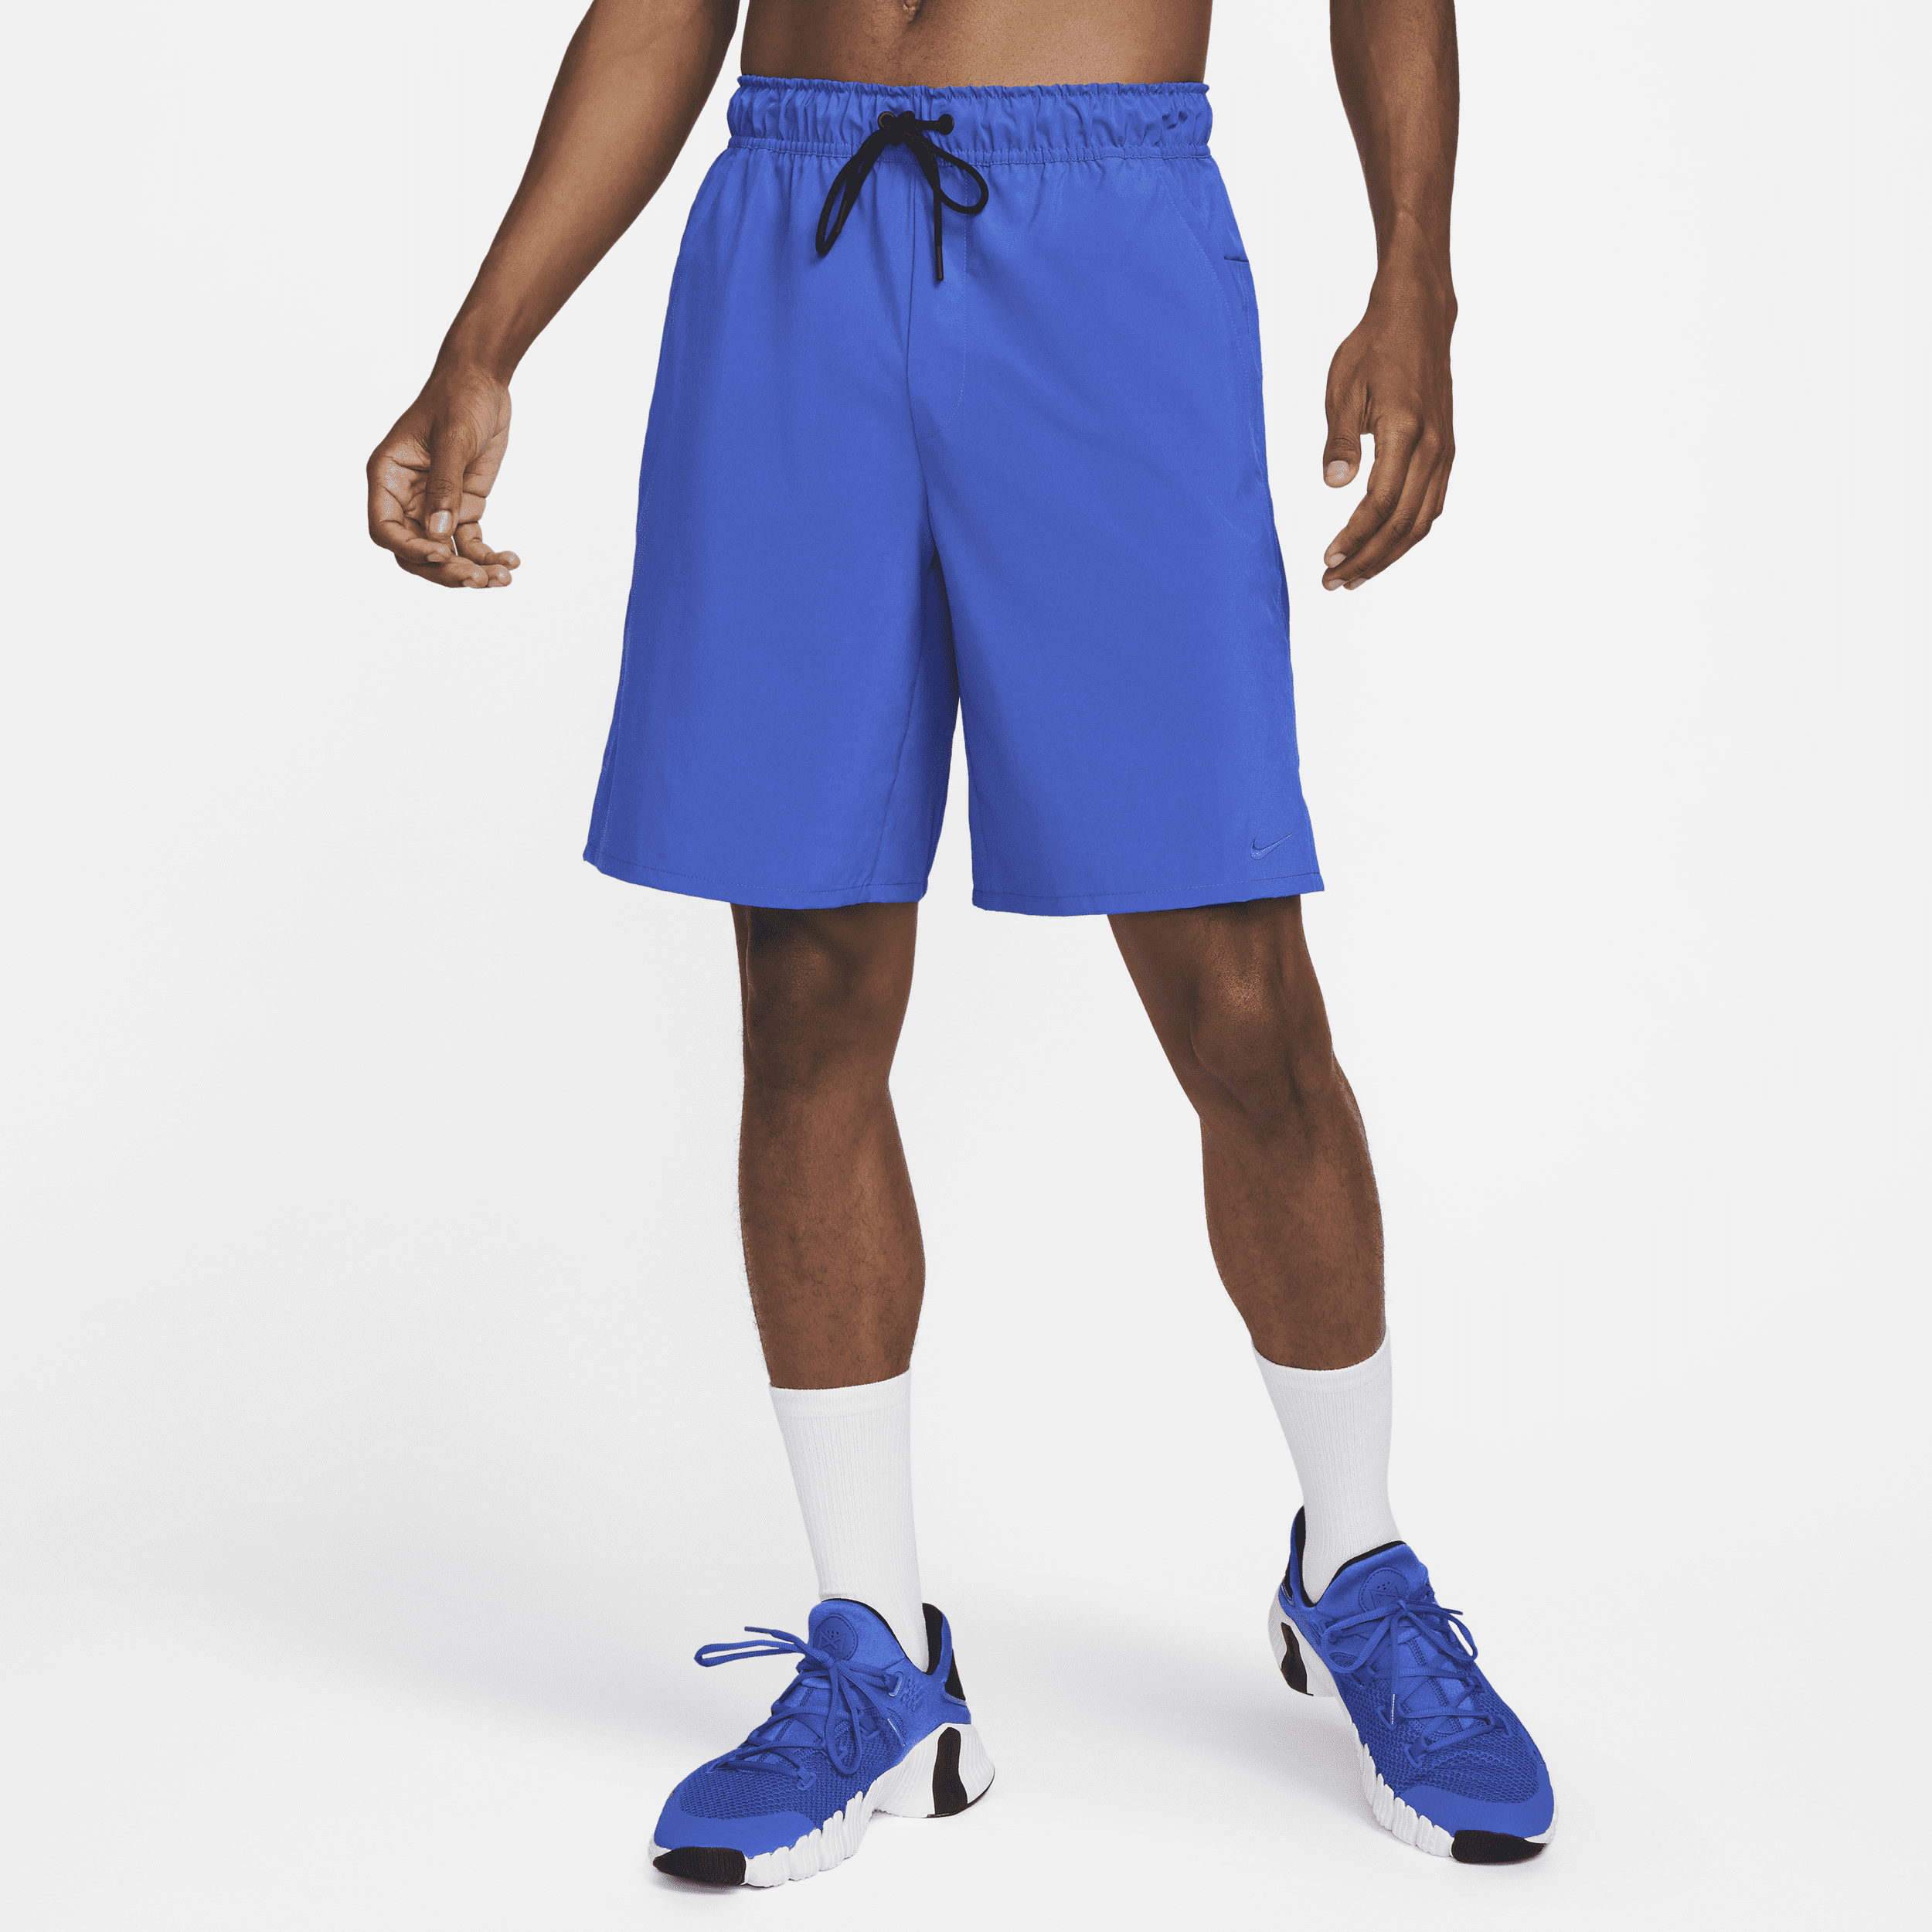 Nike Unlimited Dri-FIT Alsidige shorts (23 cm) til mænd - blå